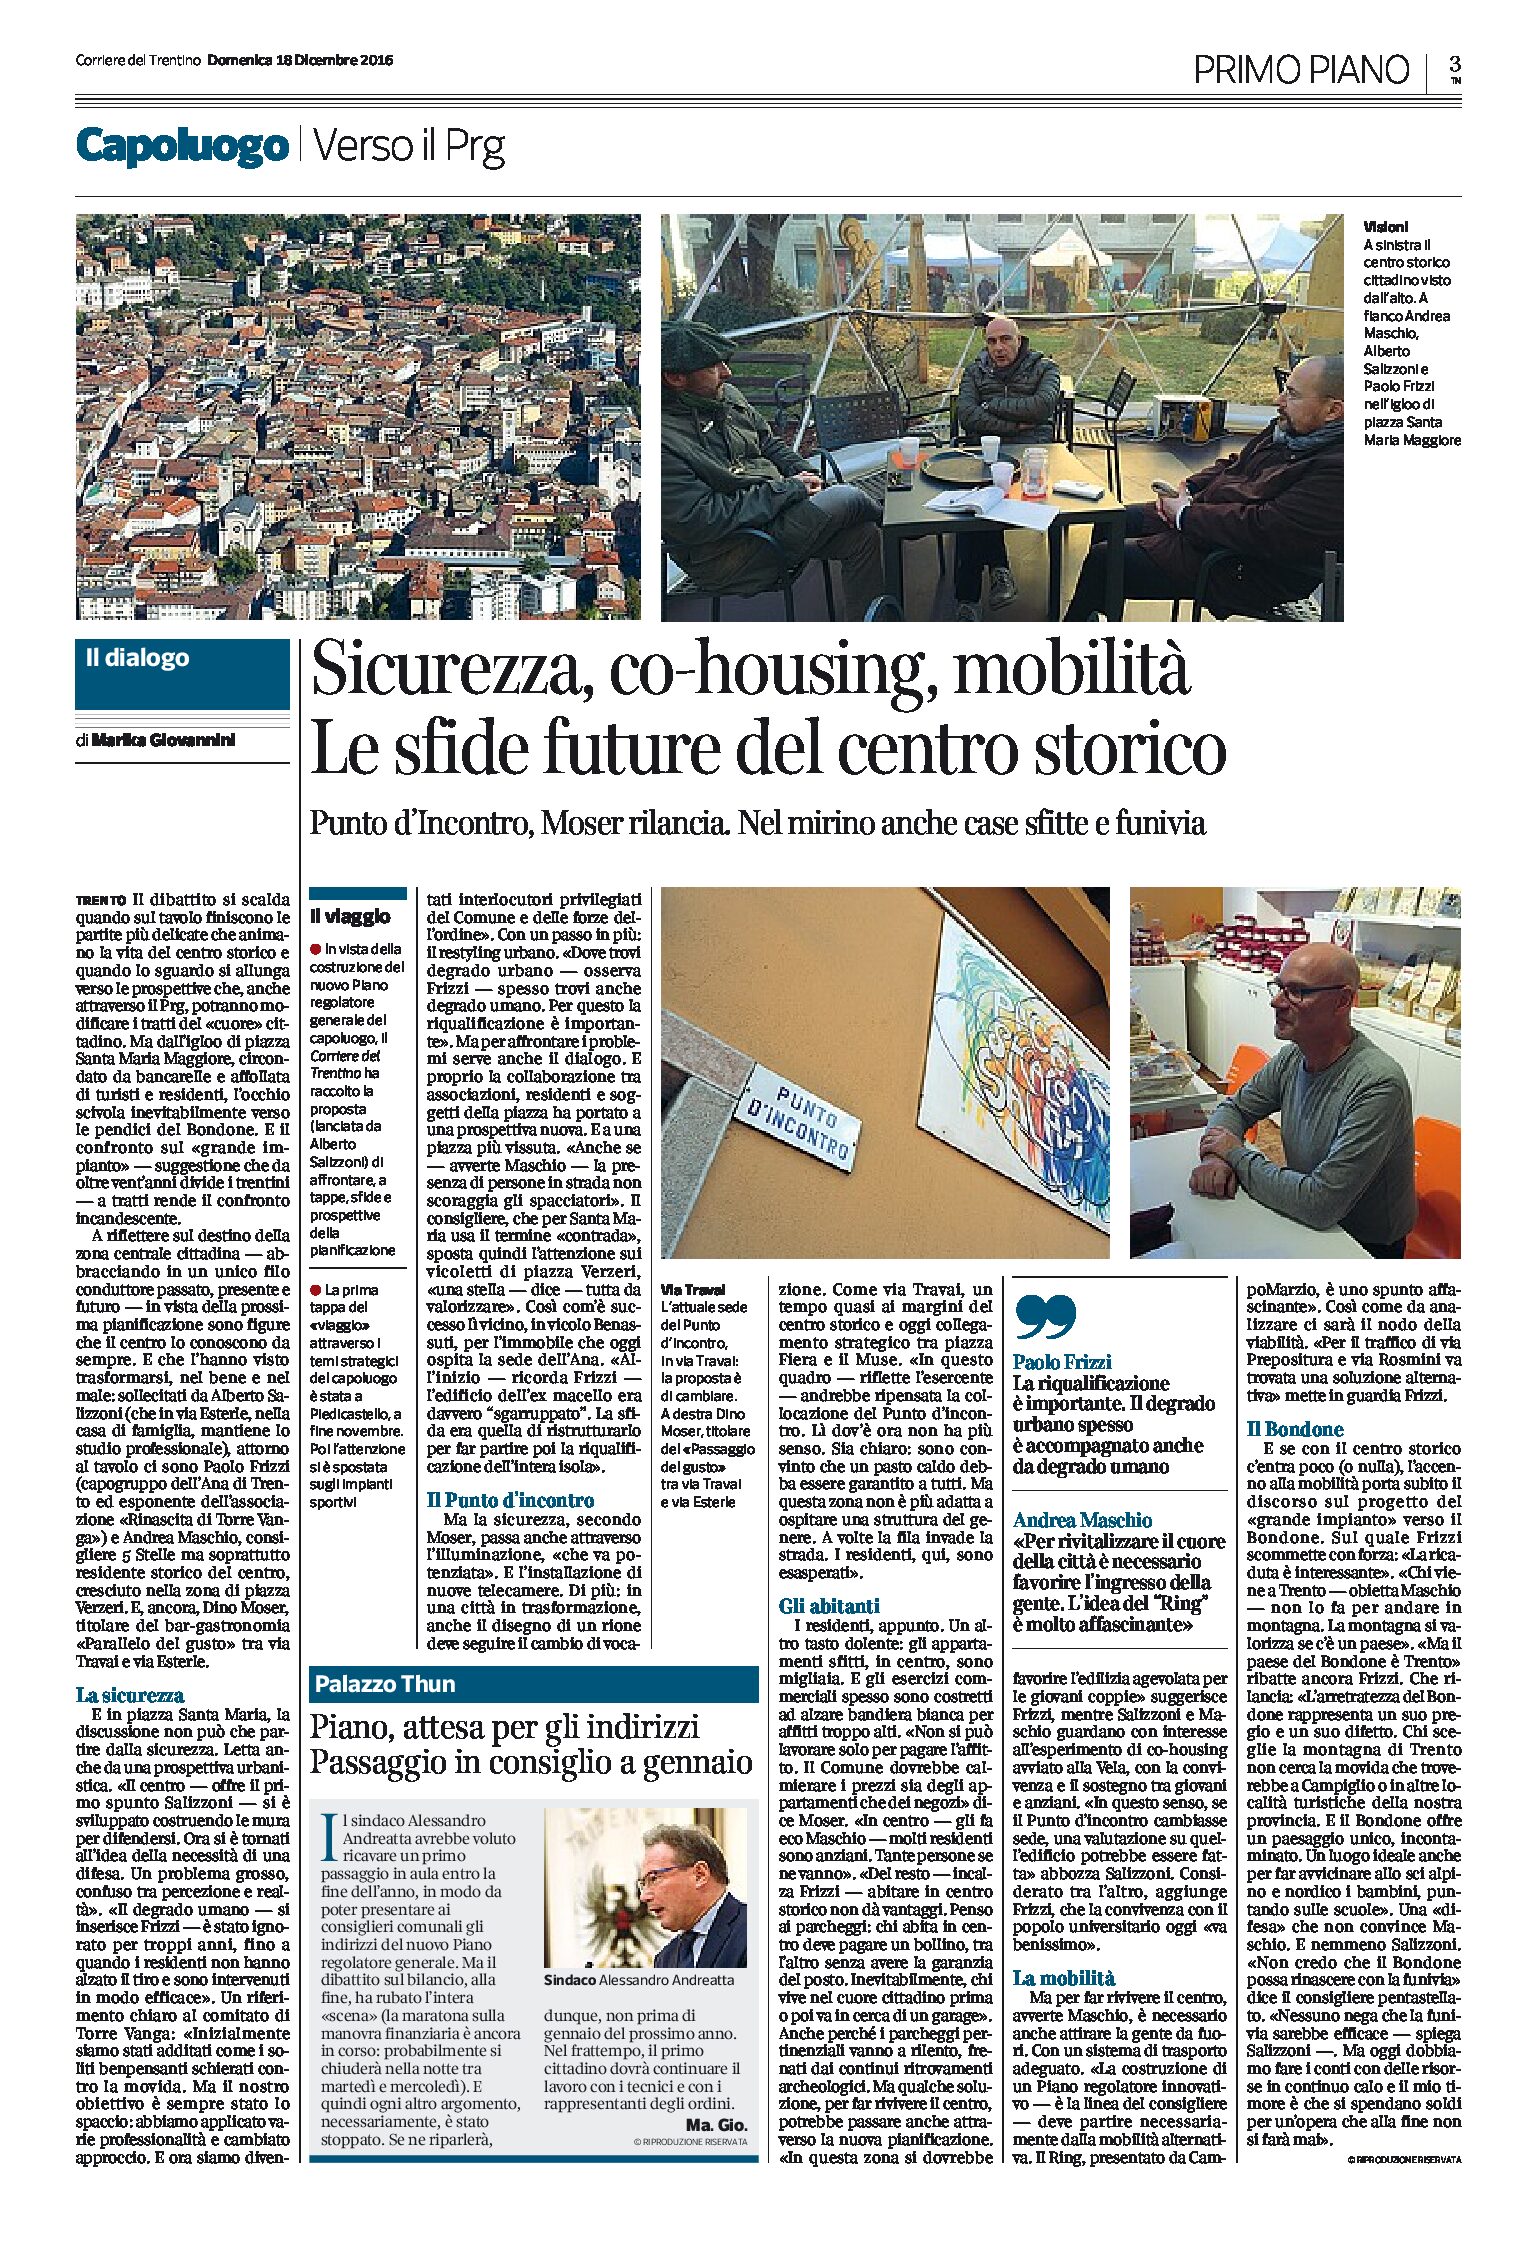 Trento: sicurezza, co-housing, mobilità. Le sfide future del centro storico